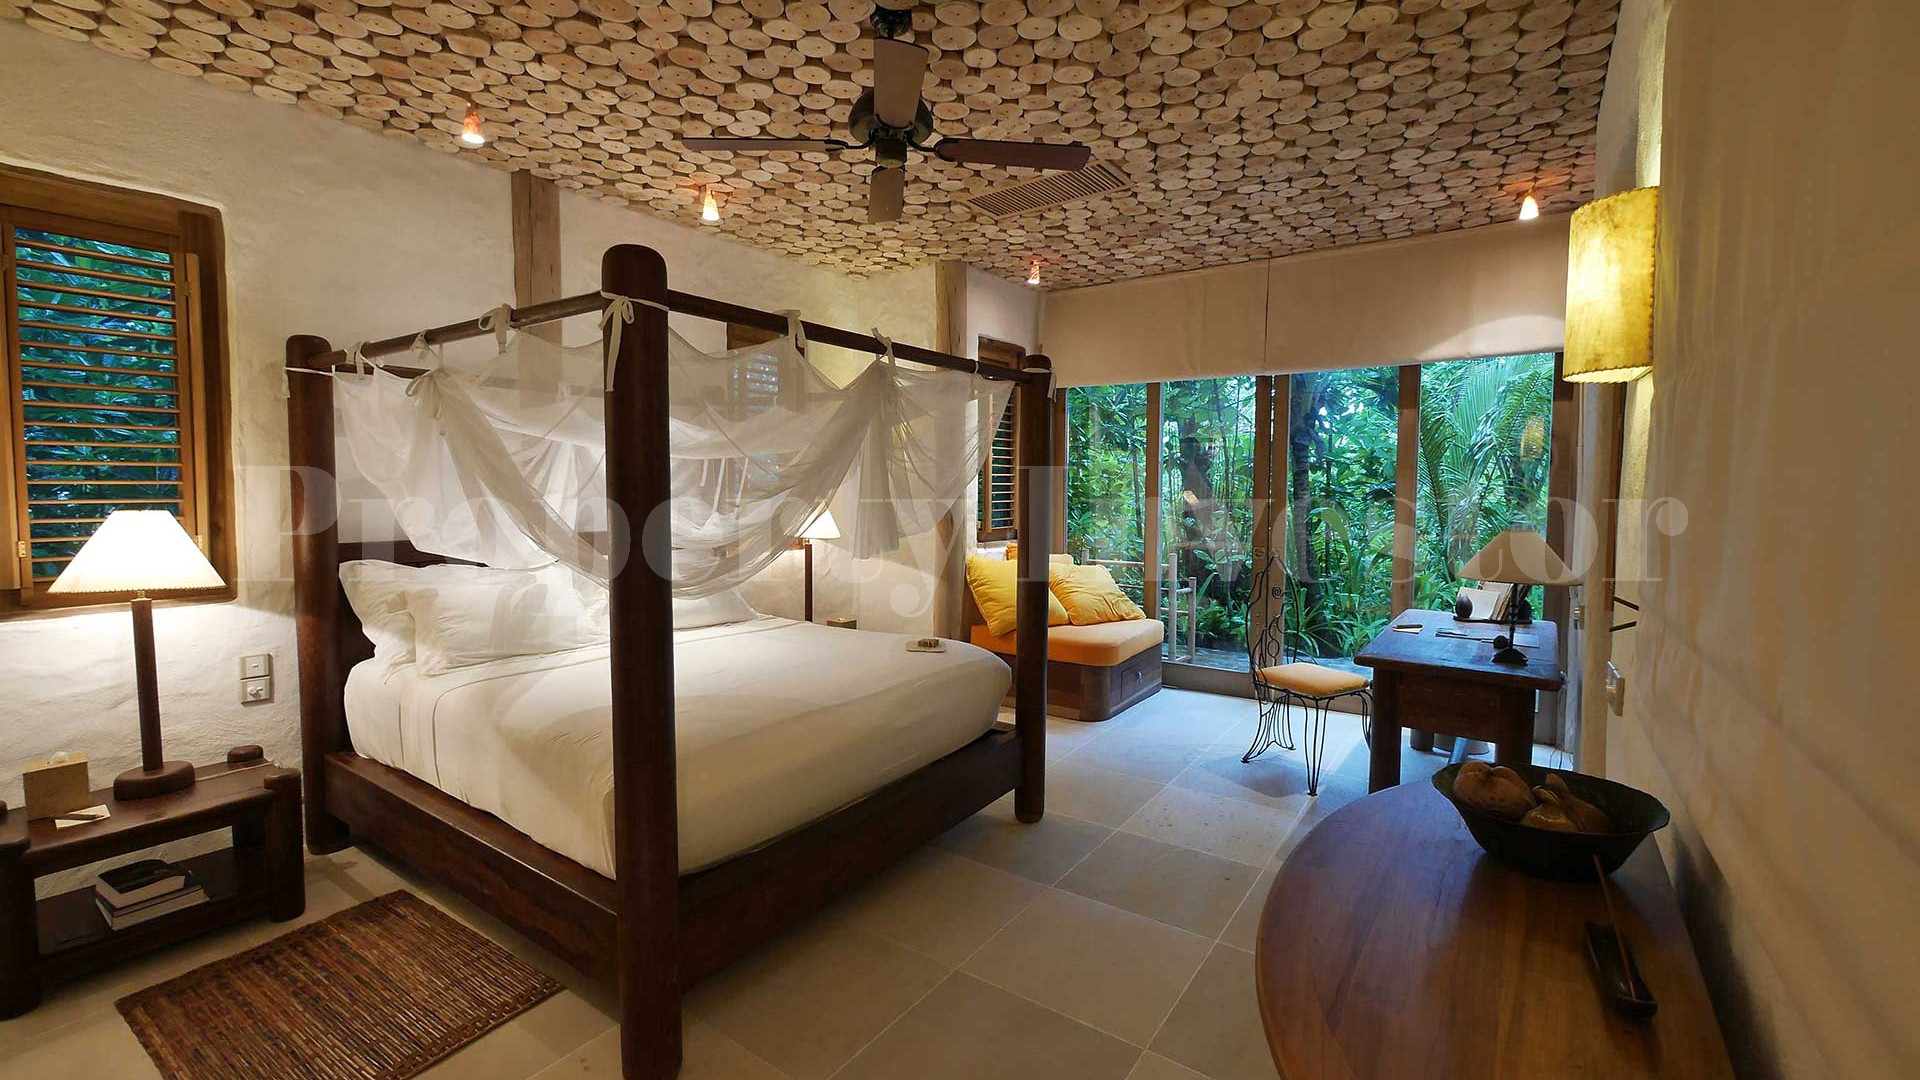 Продаётся укромная, роскошная пляжная вилла с 4 спальнями и бассейном при эко-отеле на Мальдивах